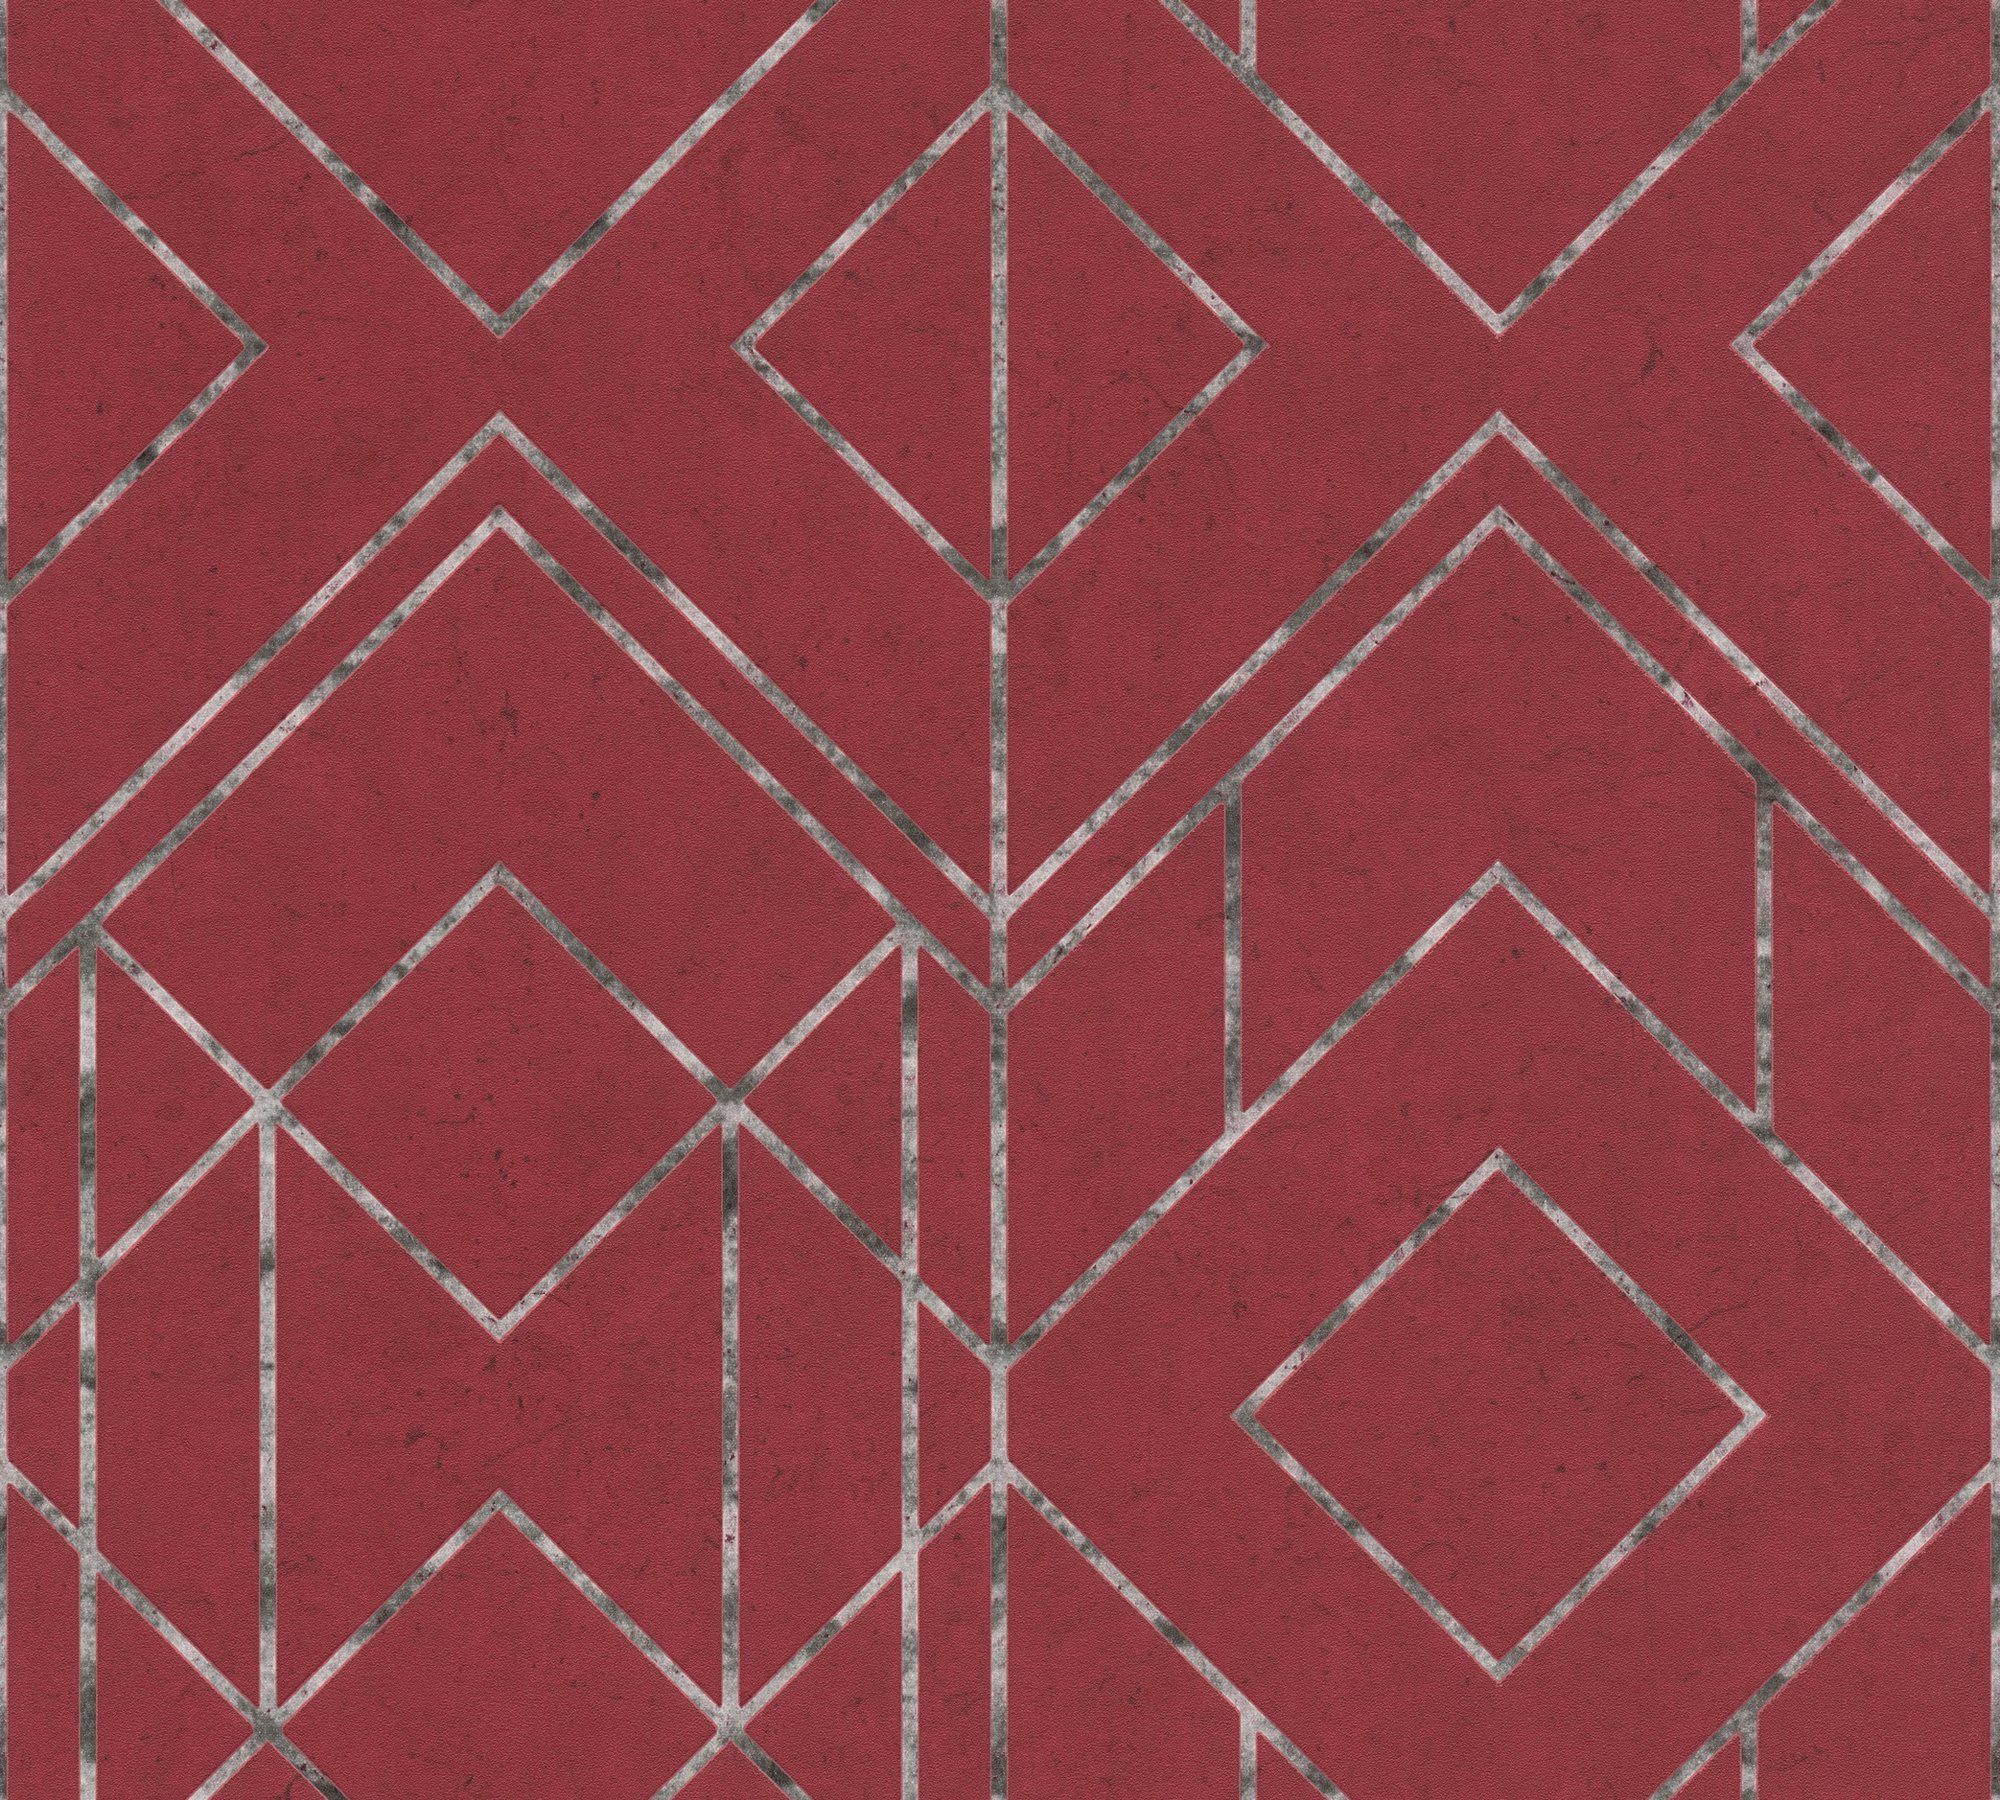 Geometrisch Vliestapete Tapete Metropolitan walls geometrisch, New grafisch, rot/grau/weiß Stories, living Ava York, Orientalische